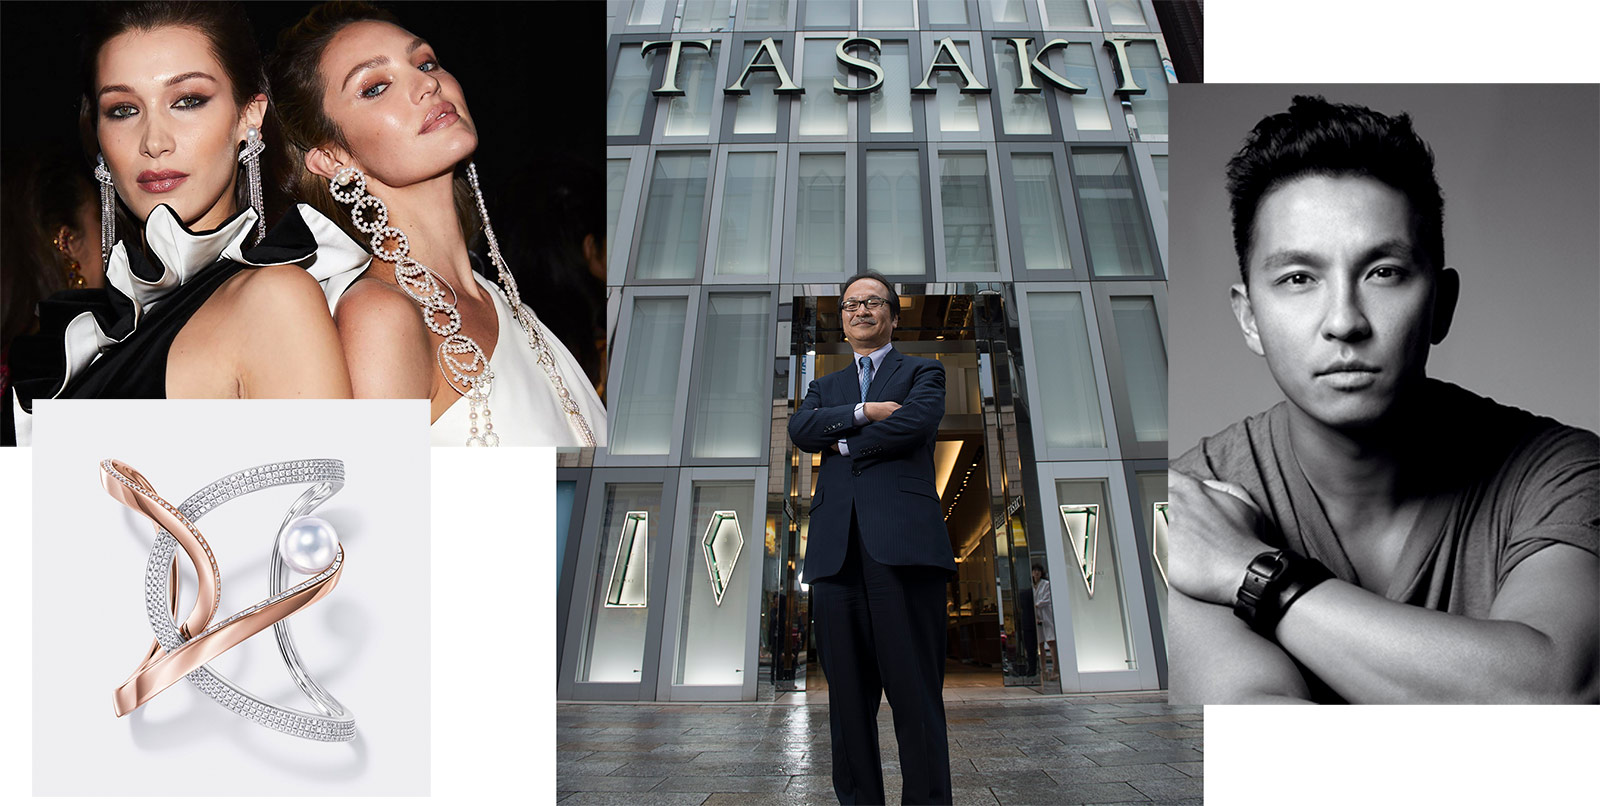 TASAKI jewellery, TASAKI Brand Director and CEO Toshikazu Tajima, and TASAKI Creative Director Prabal Gurung